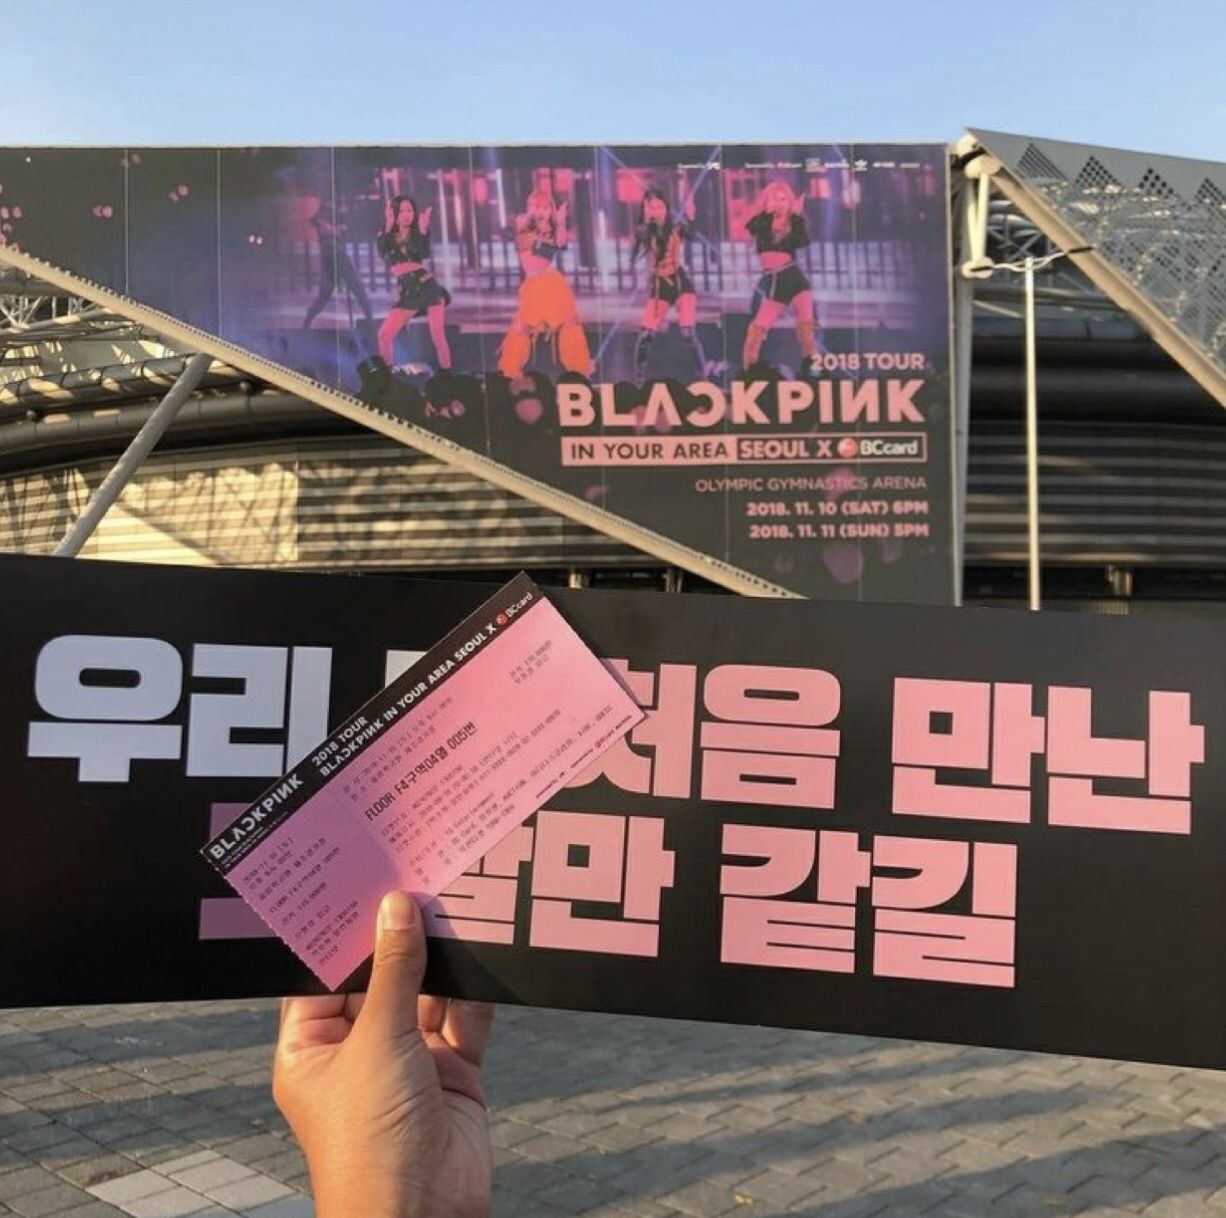 Tour diễn vòng quanh thế giới của Blackpink đã vượt mốc 1 triệu vé được bán ra. Ảnh: Naver